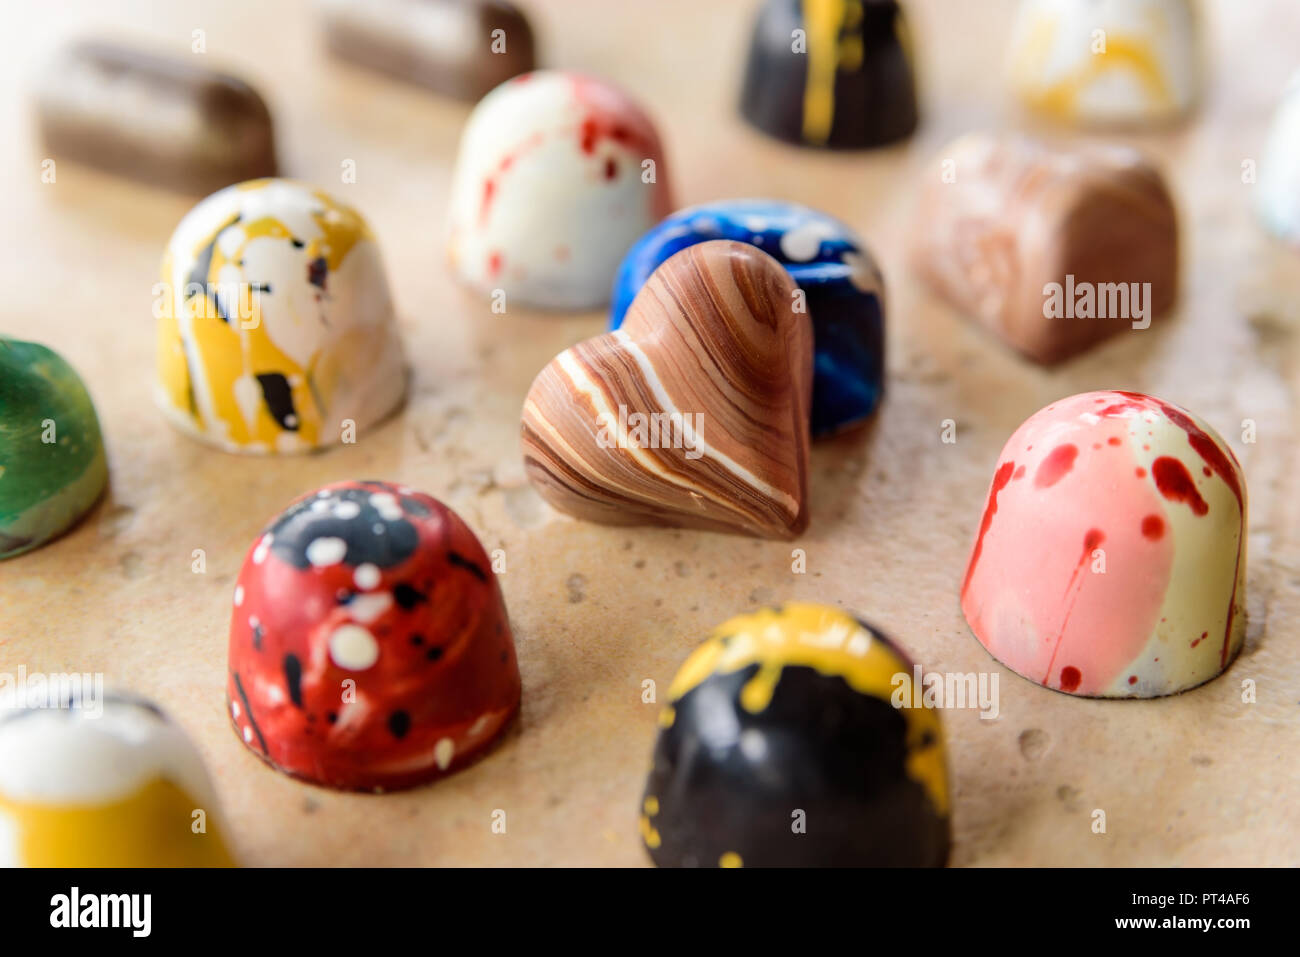 Coeur au chocolat maison s'appuyant sur et entouré par d'autres bonbons colorés. Banque D'Images